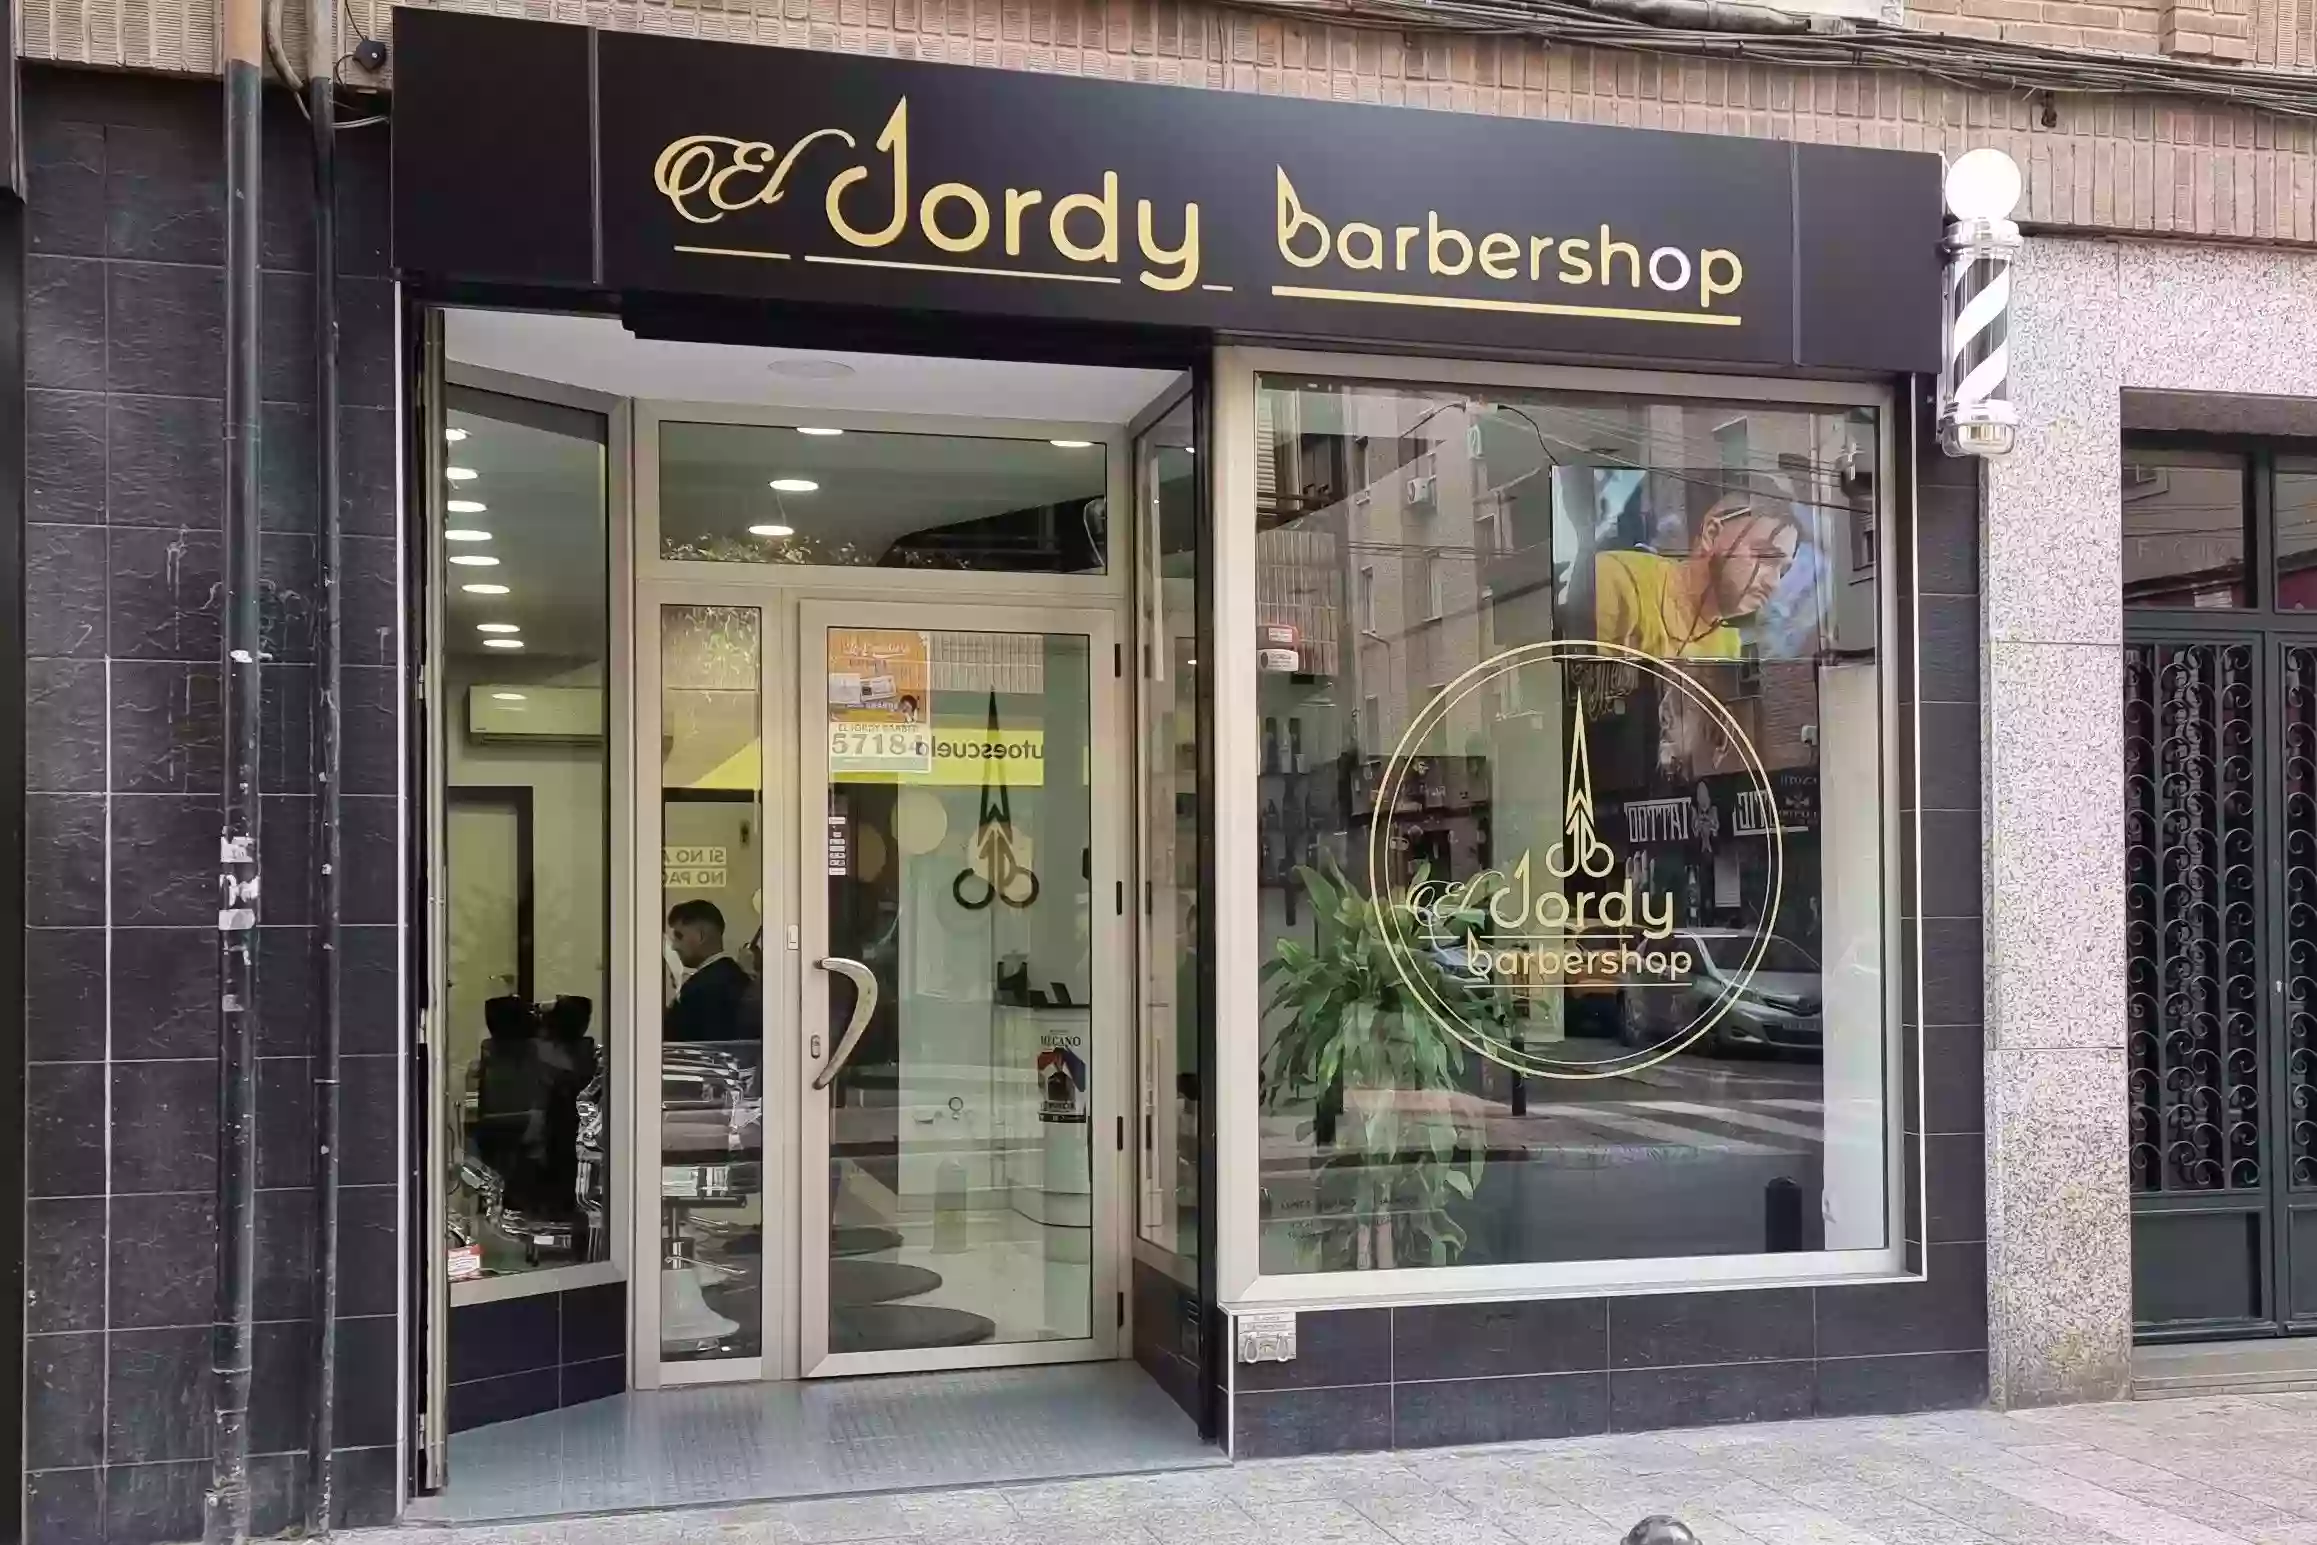 El Jordy Barbershop